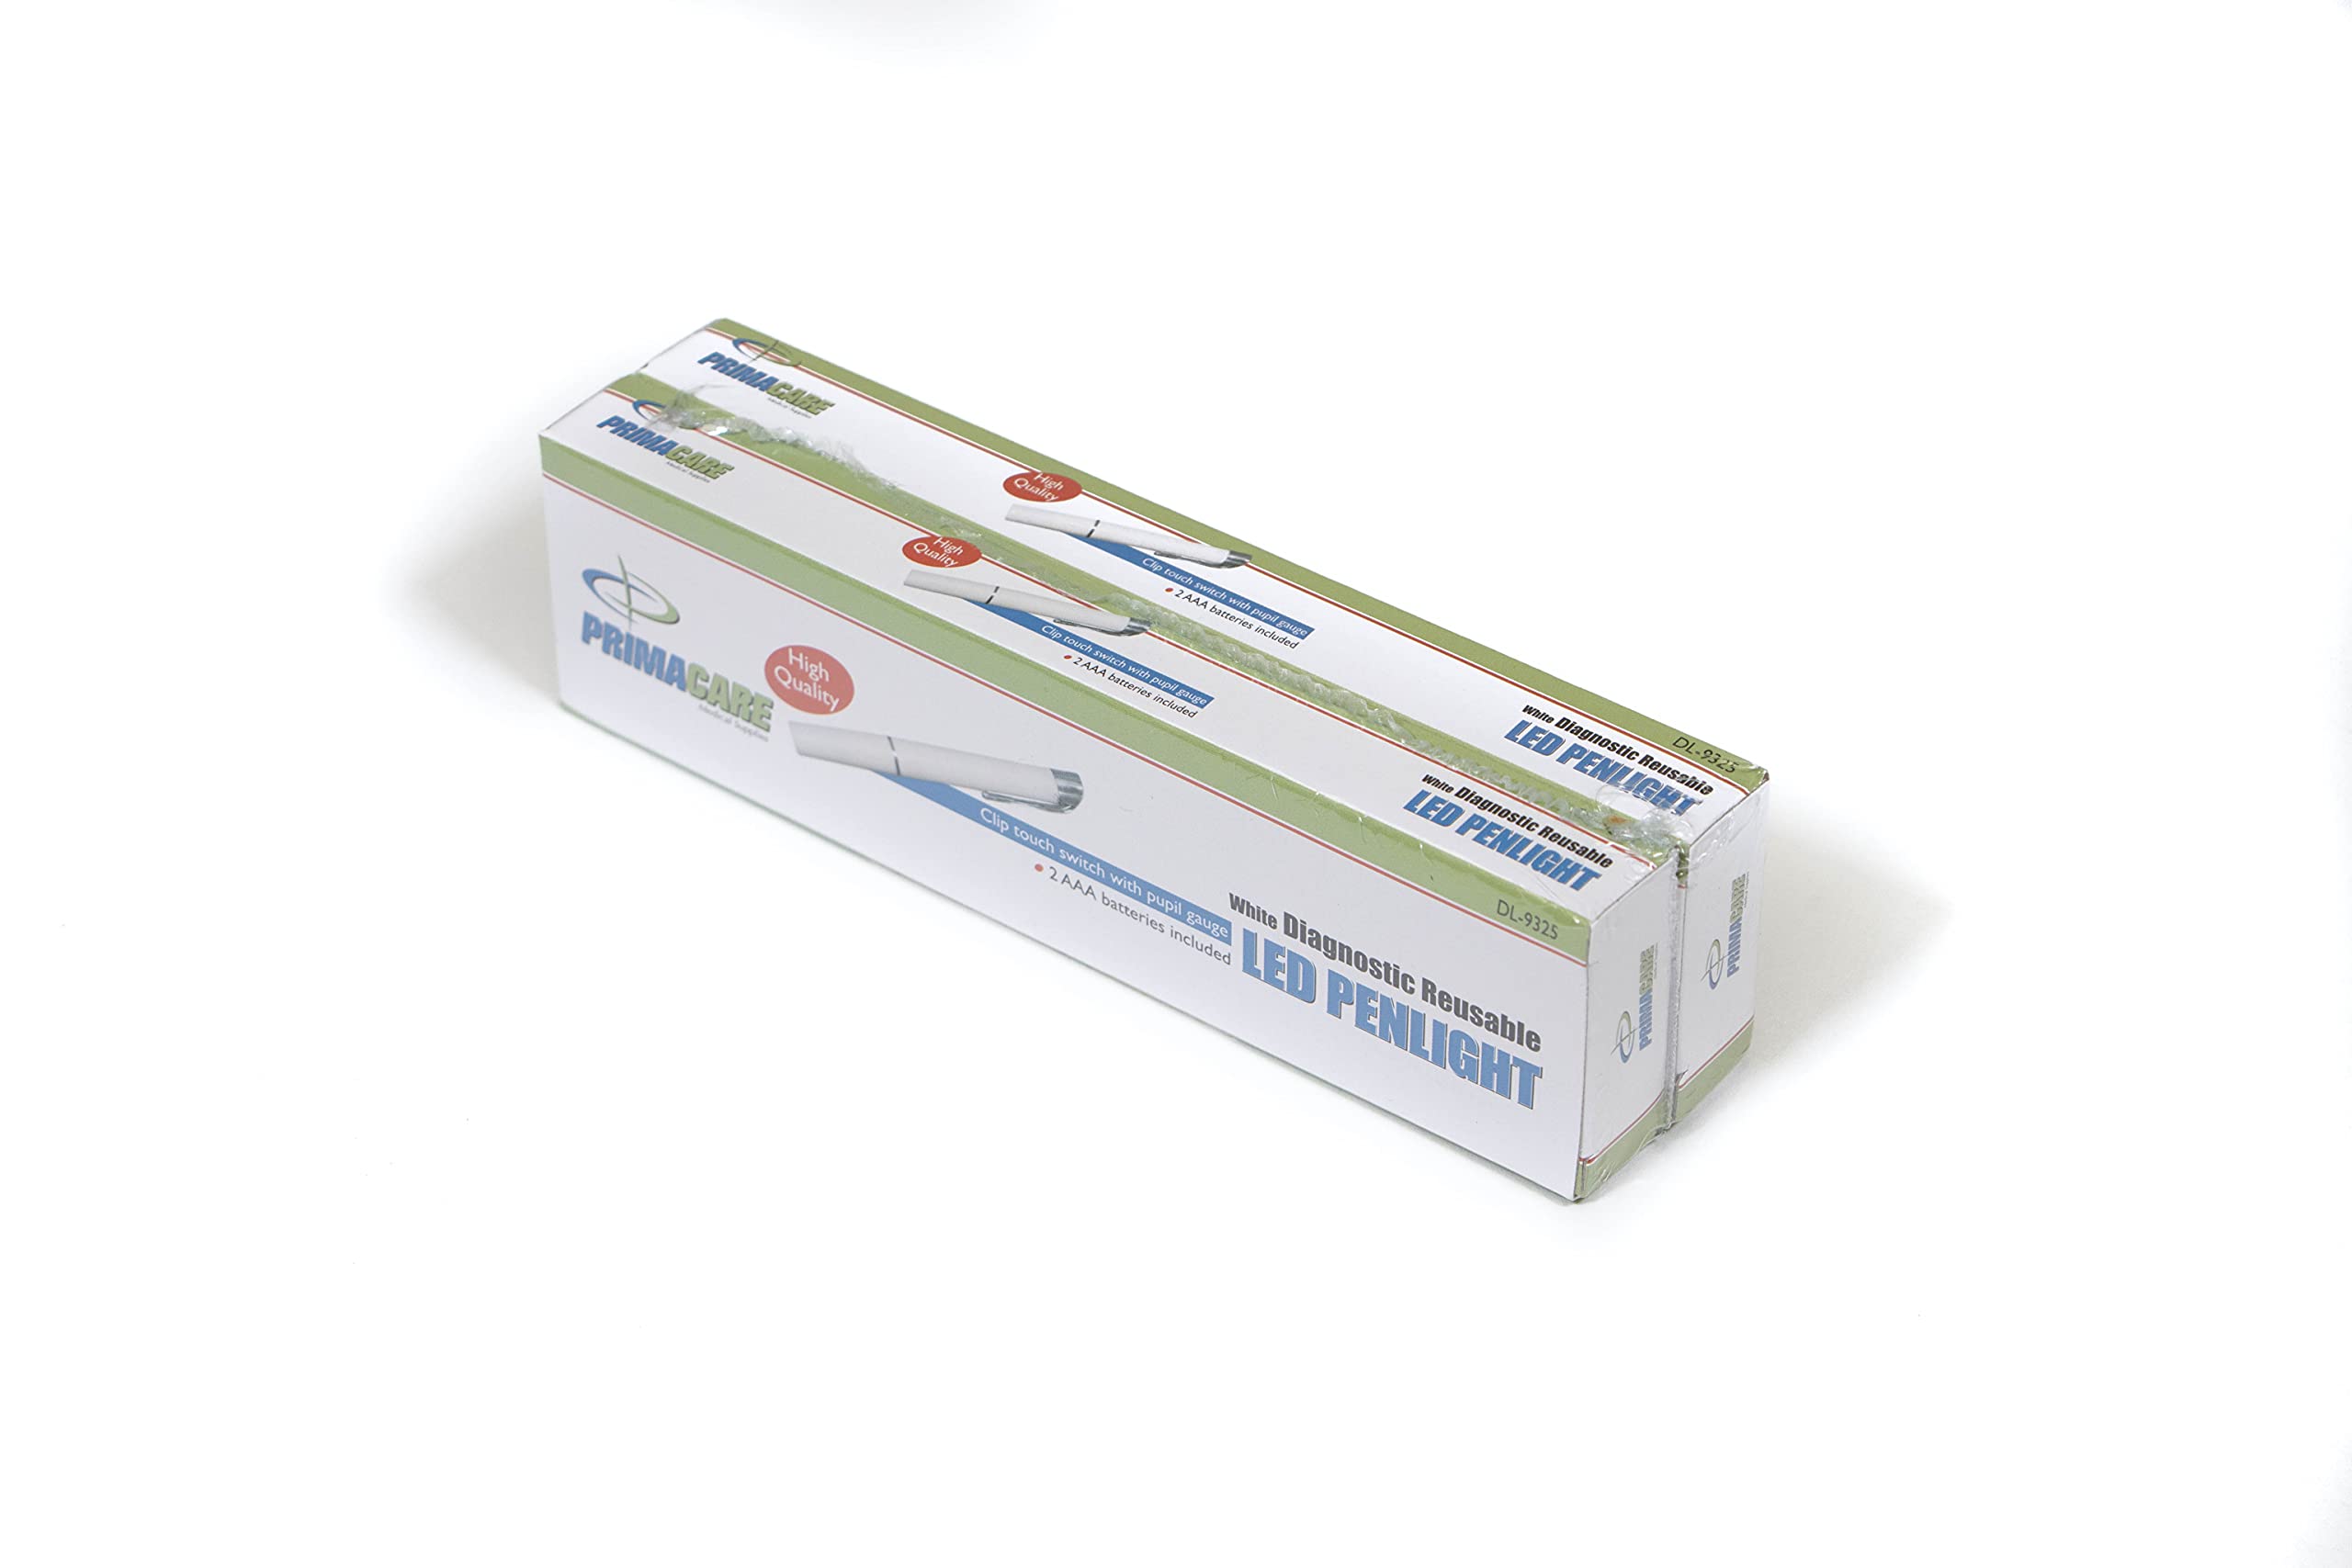 Primacare DL-9325-2 Pack of 2 LED Diagnostic Penlight with Imprinted Pupil Gauge, Reusable and Lightweight Medical Pen Light for Nurse, Student, Doctors EMT, Batteries Included, White